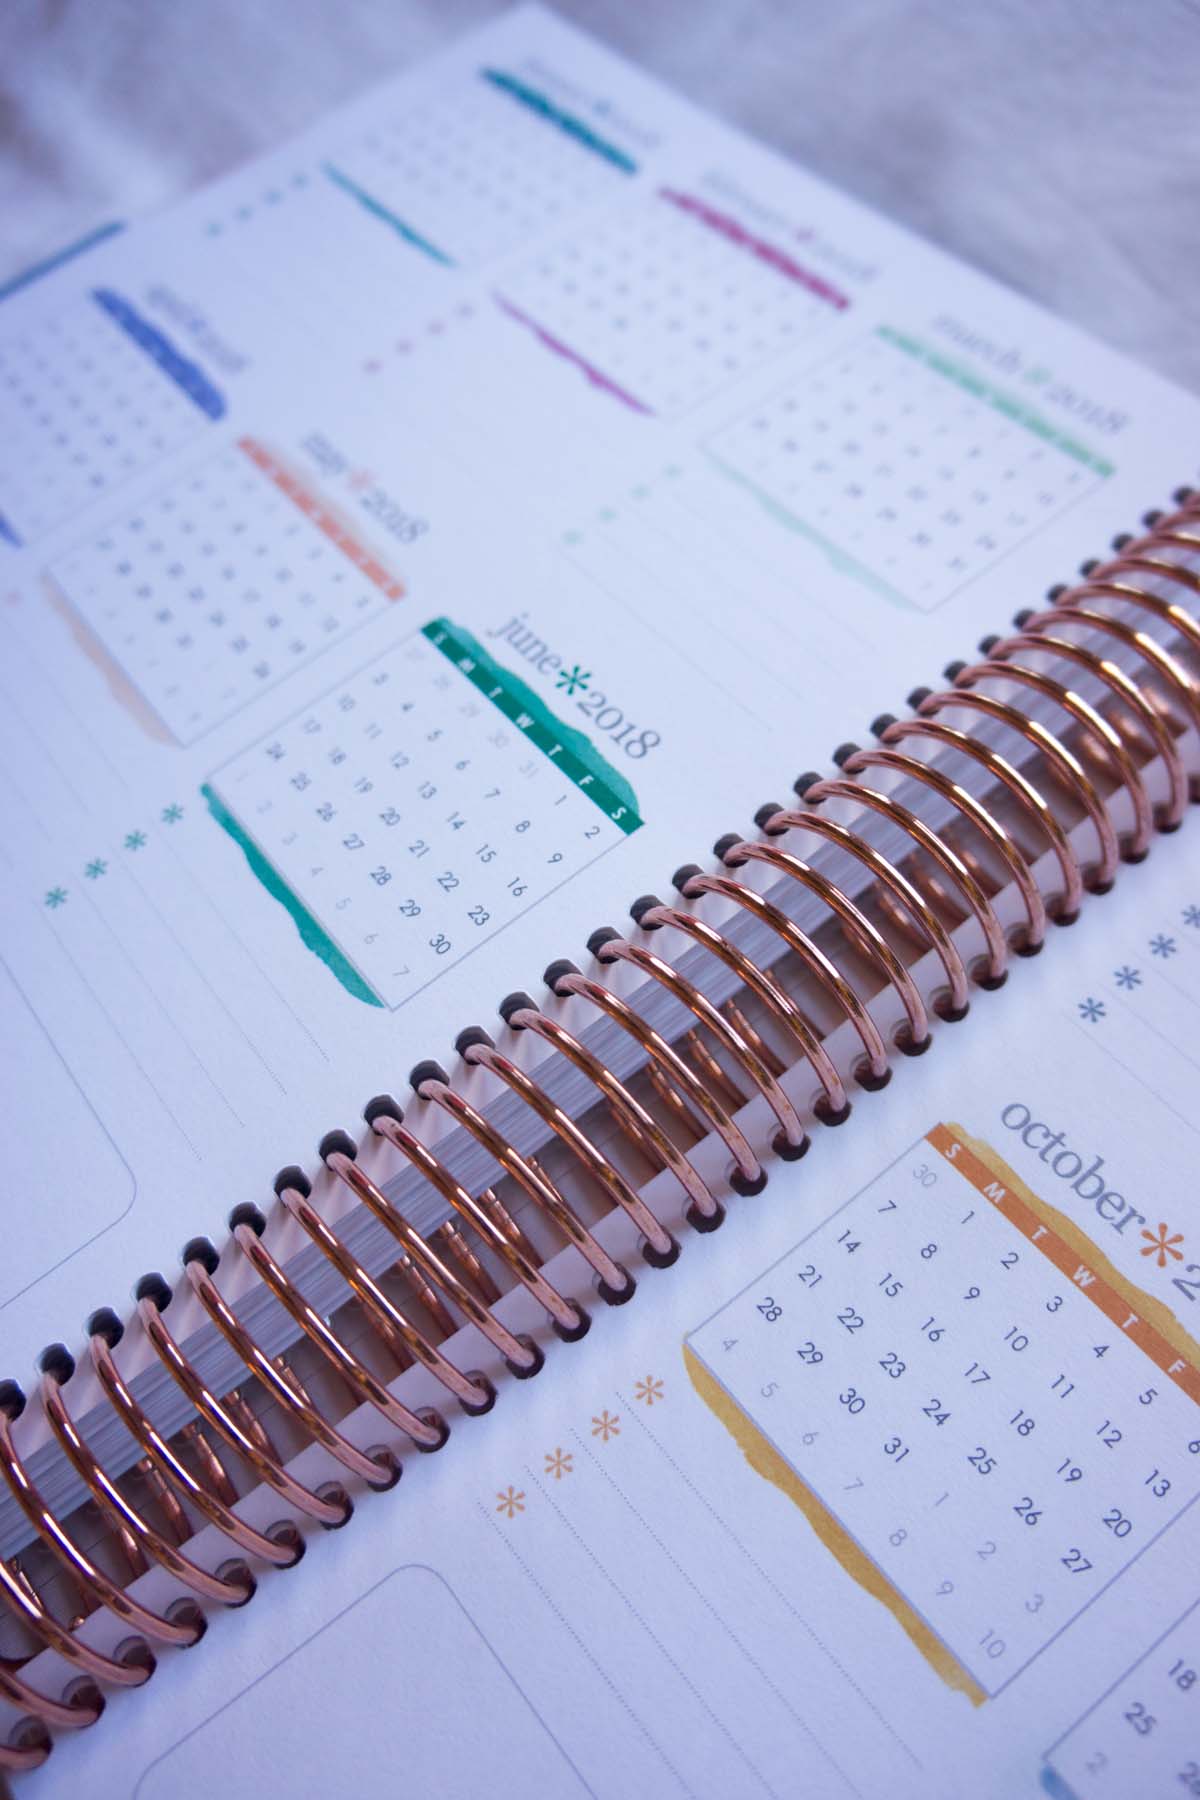 How To Organize Planner Supplies - 11 planner suplies organization ideas